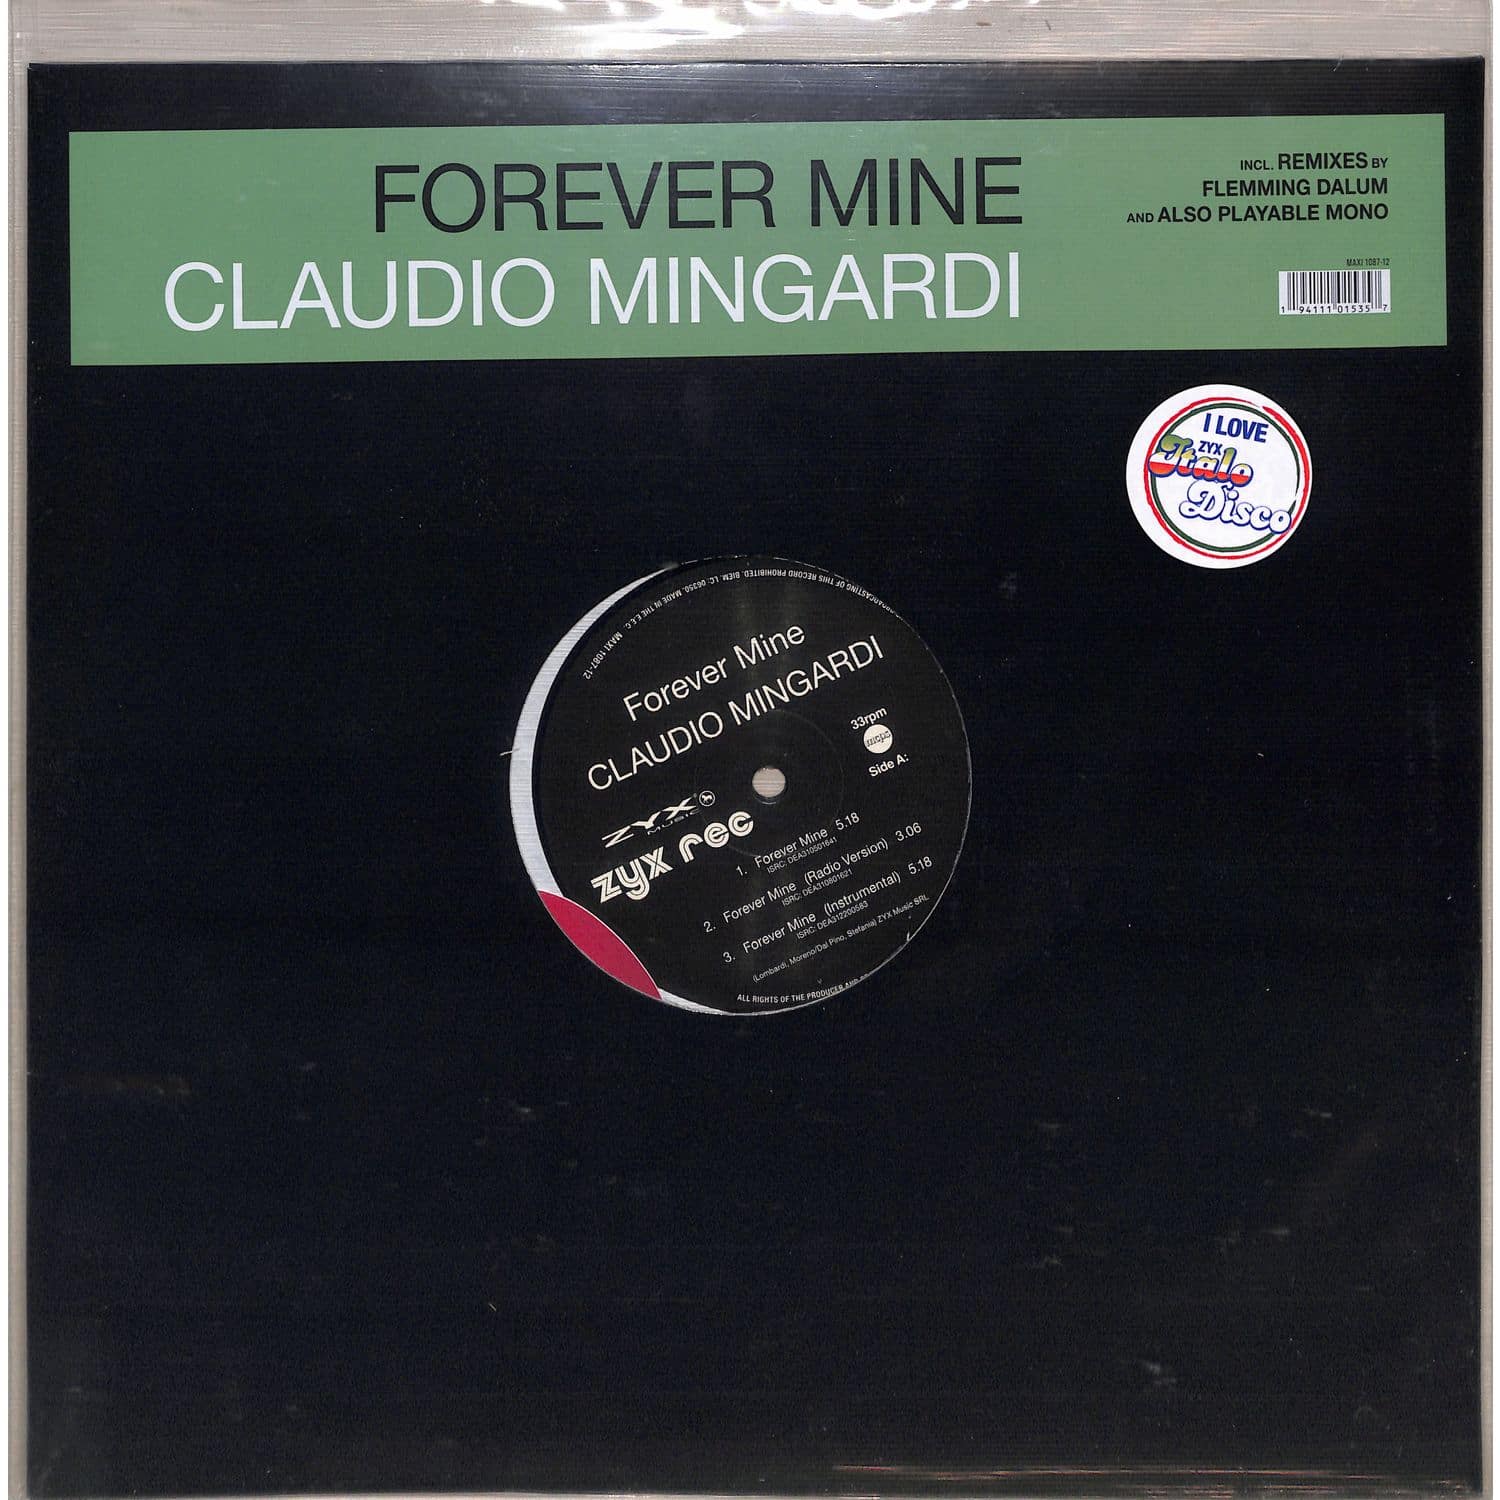 Claudio Mingardi - FOREVER MINE